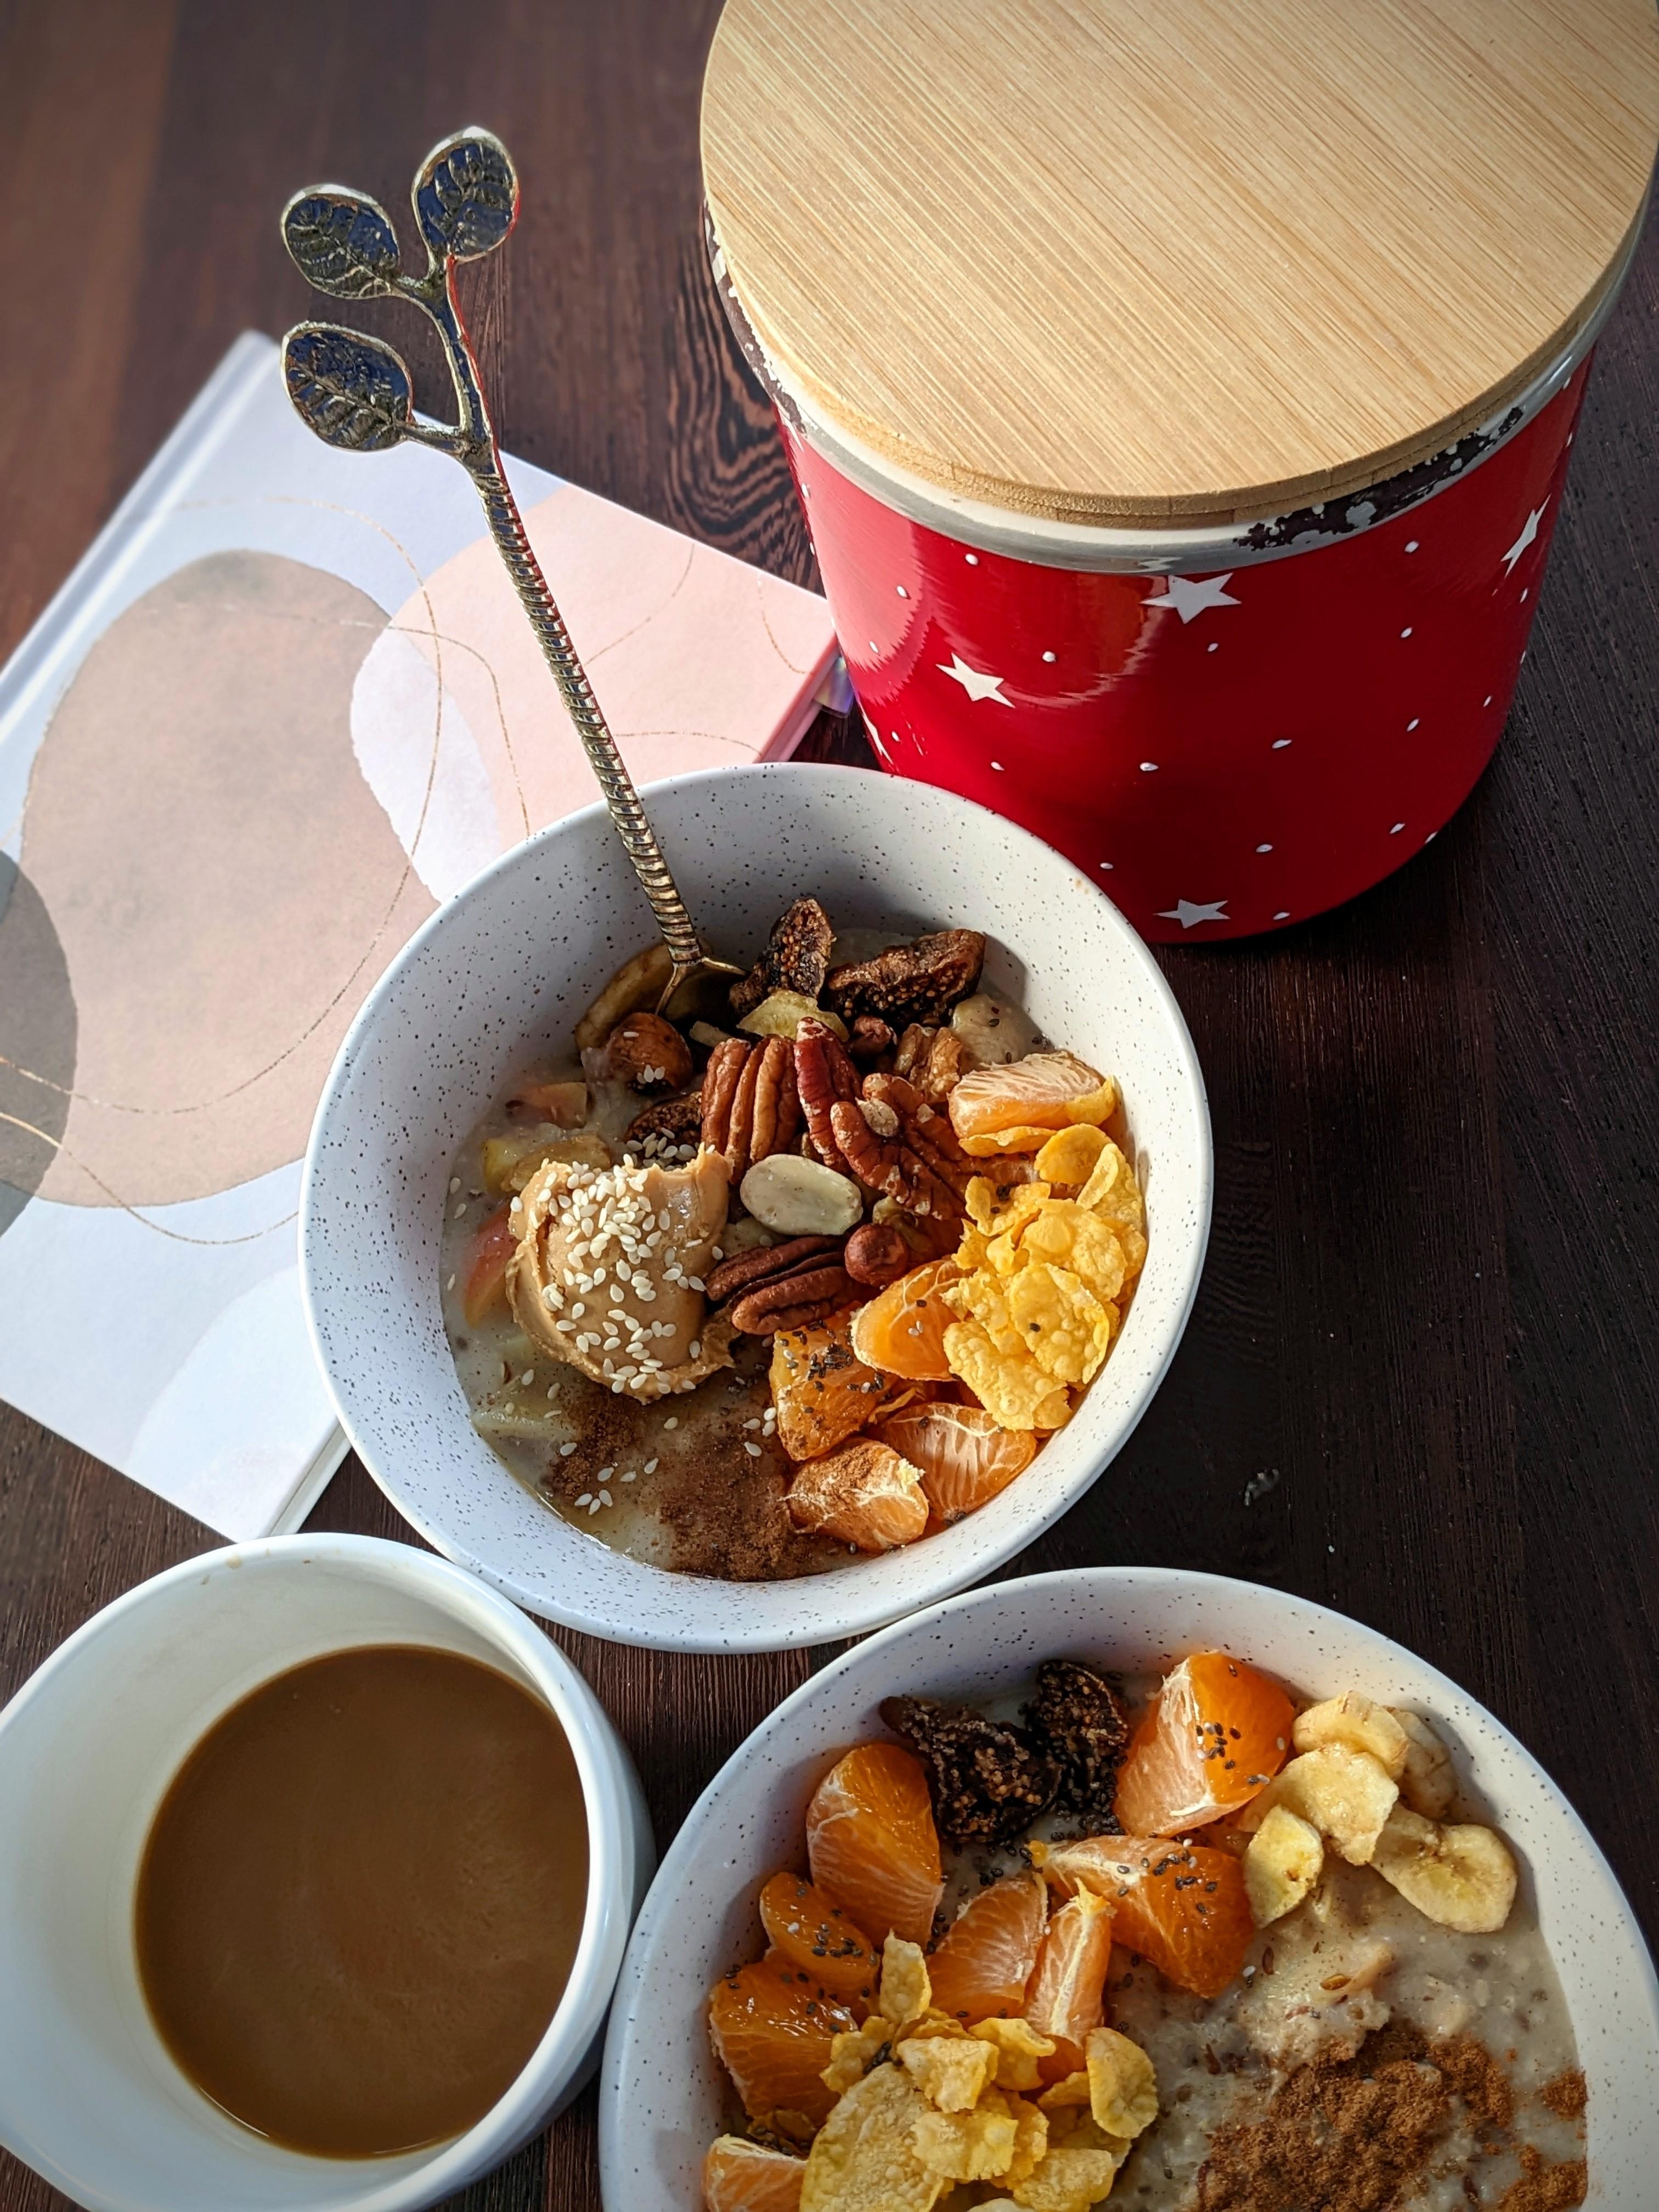 Reichhaltiges Hafermilch-Porridge mit Datteln, Apfelstücke,Rosinen, 🍎🍊Mandarinen, getrocknete Feigen. 
#lecker #brunch